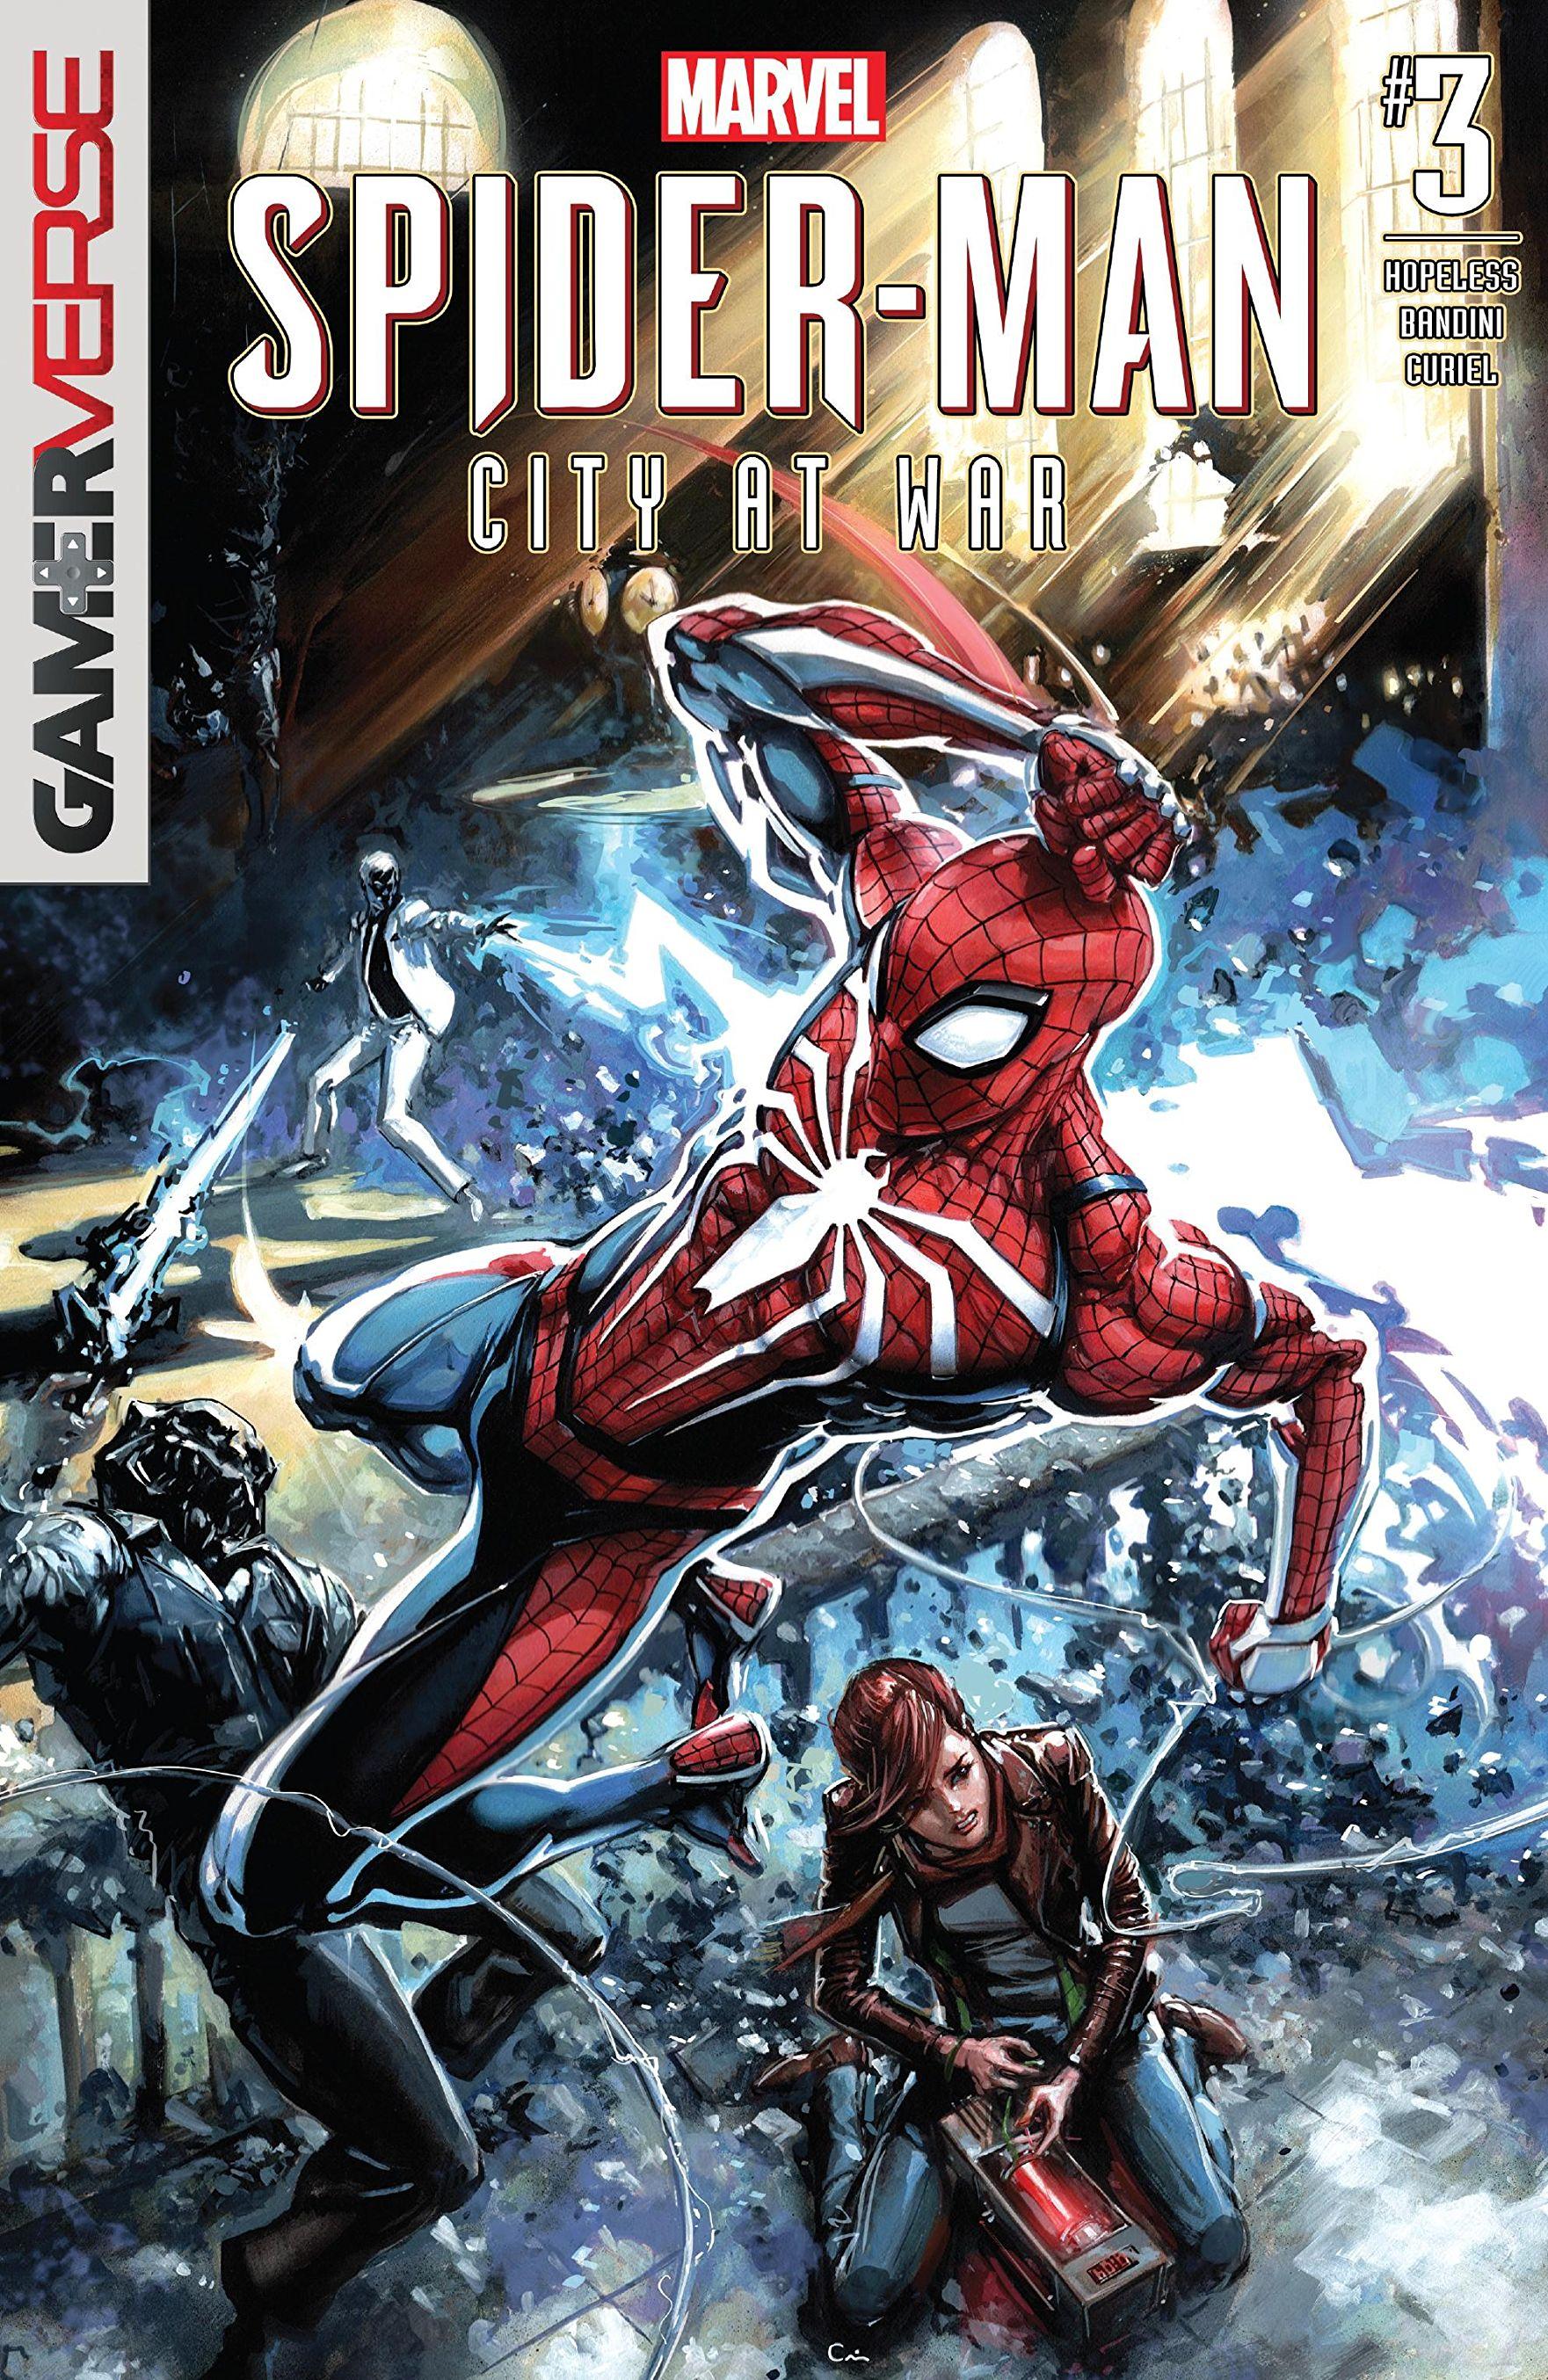 Marvel's Spider-Man: City at War Vol. 1 #3